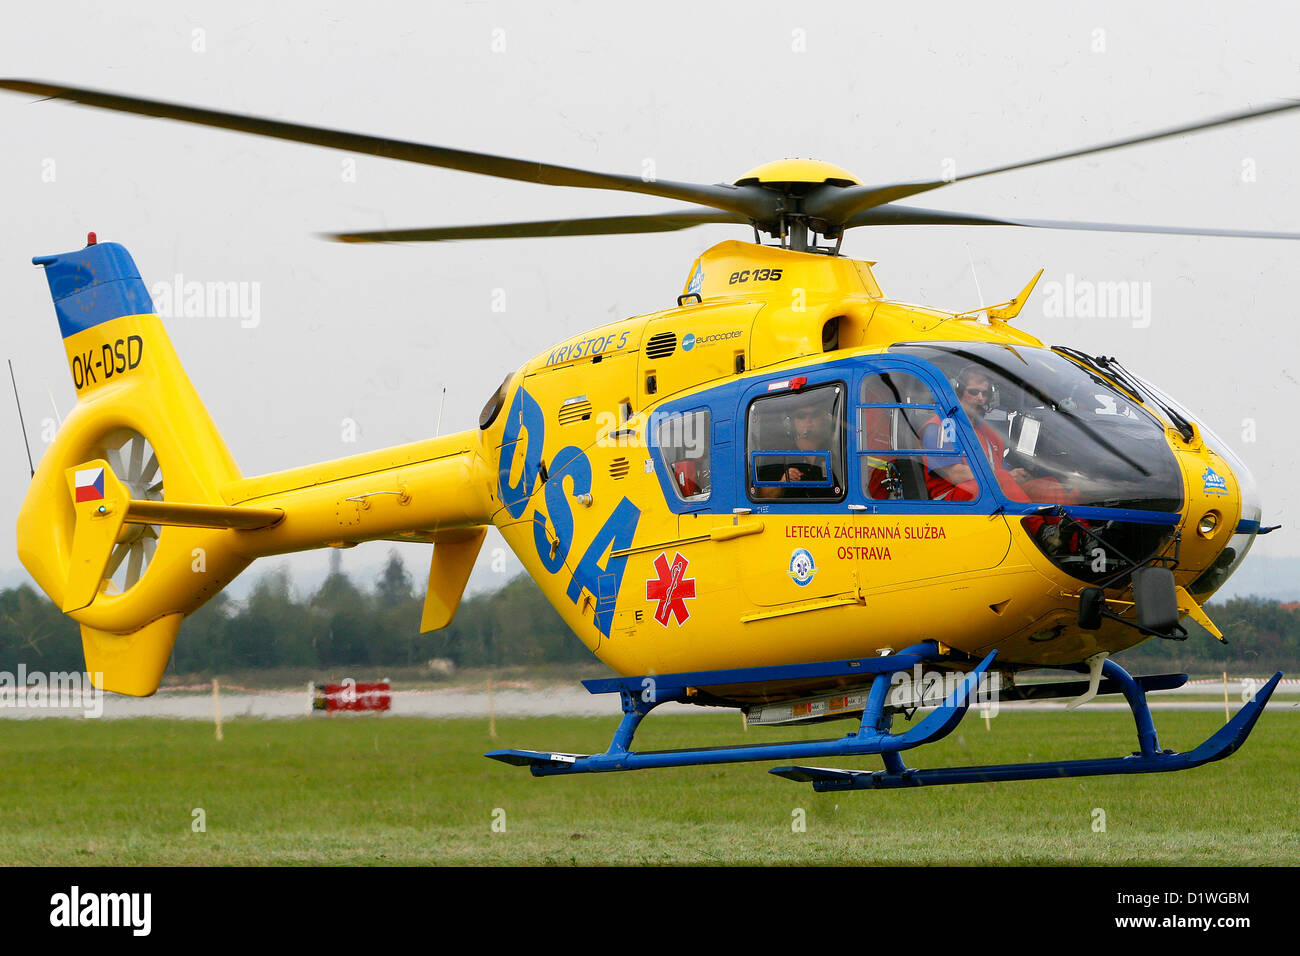 Service tchèque de sauvetage par hélicoptère, République tchèque Eurocopter EC 135 Service tchèque de secours médical Banque D'Images